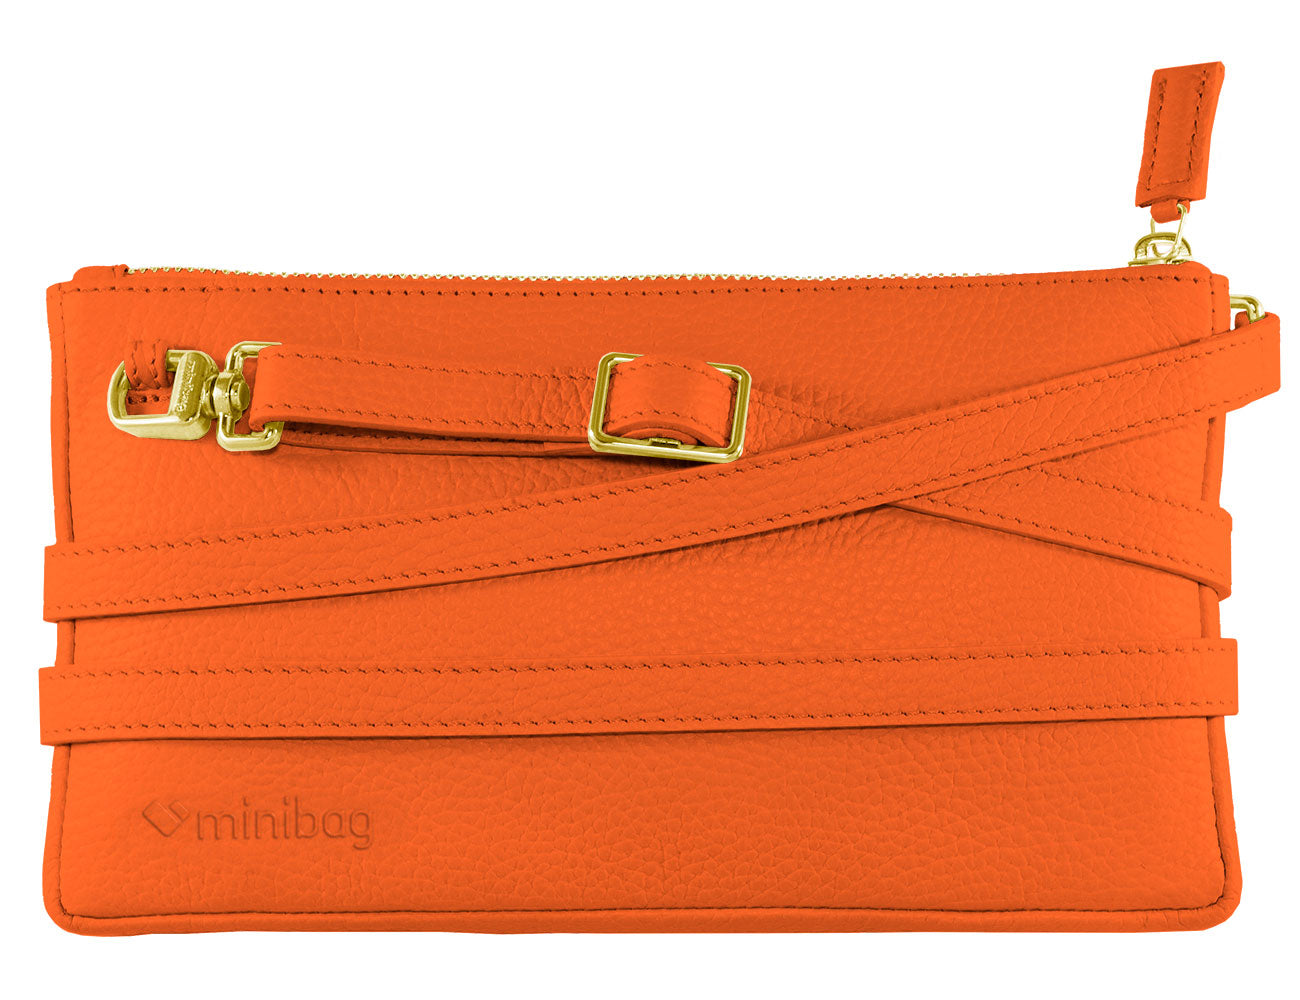 minibag orange Edition GOLD, Ledertasche orange, Vorderseite minibag, Clutch orange, Details in gold